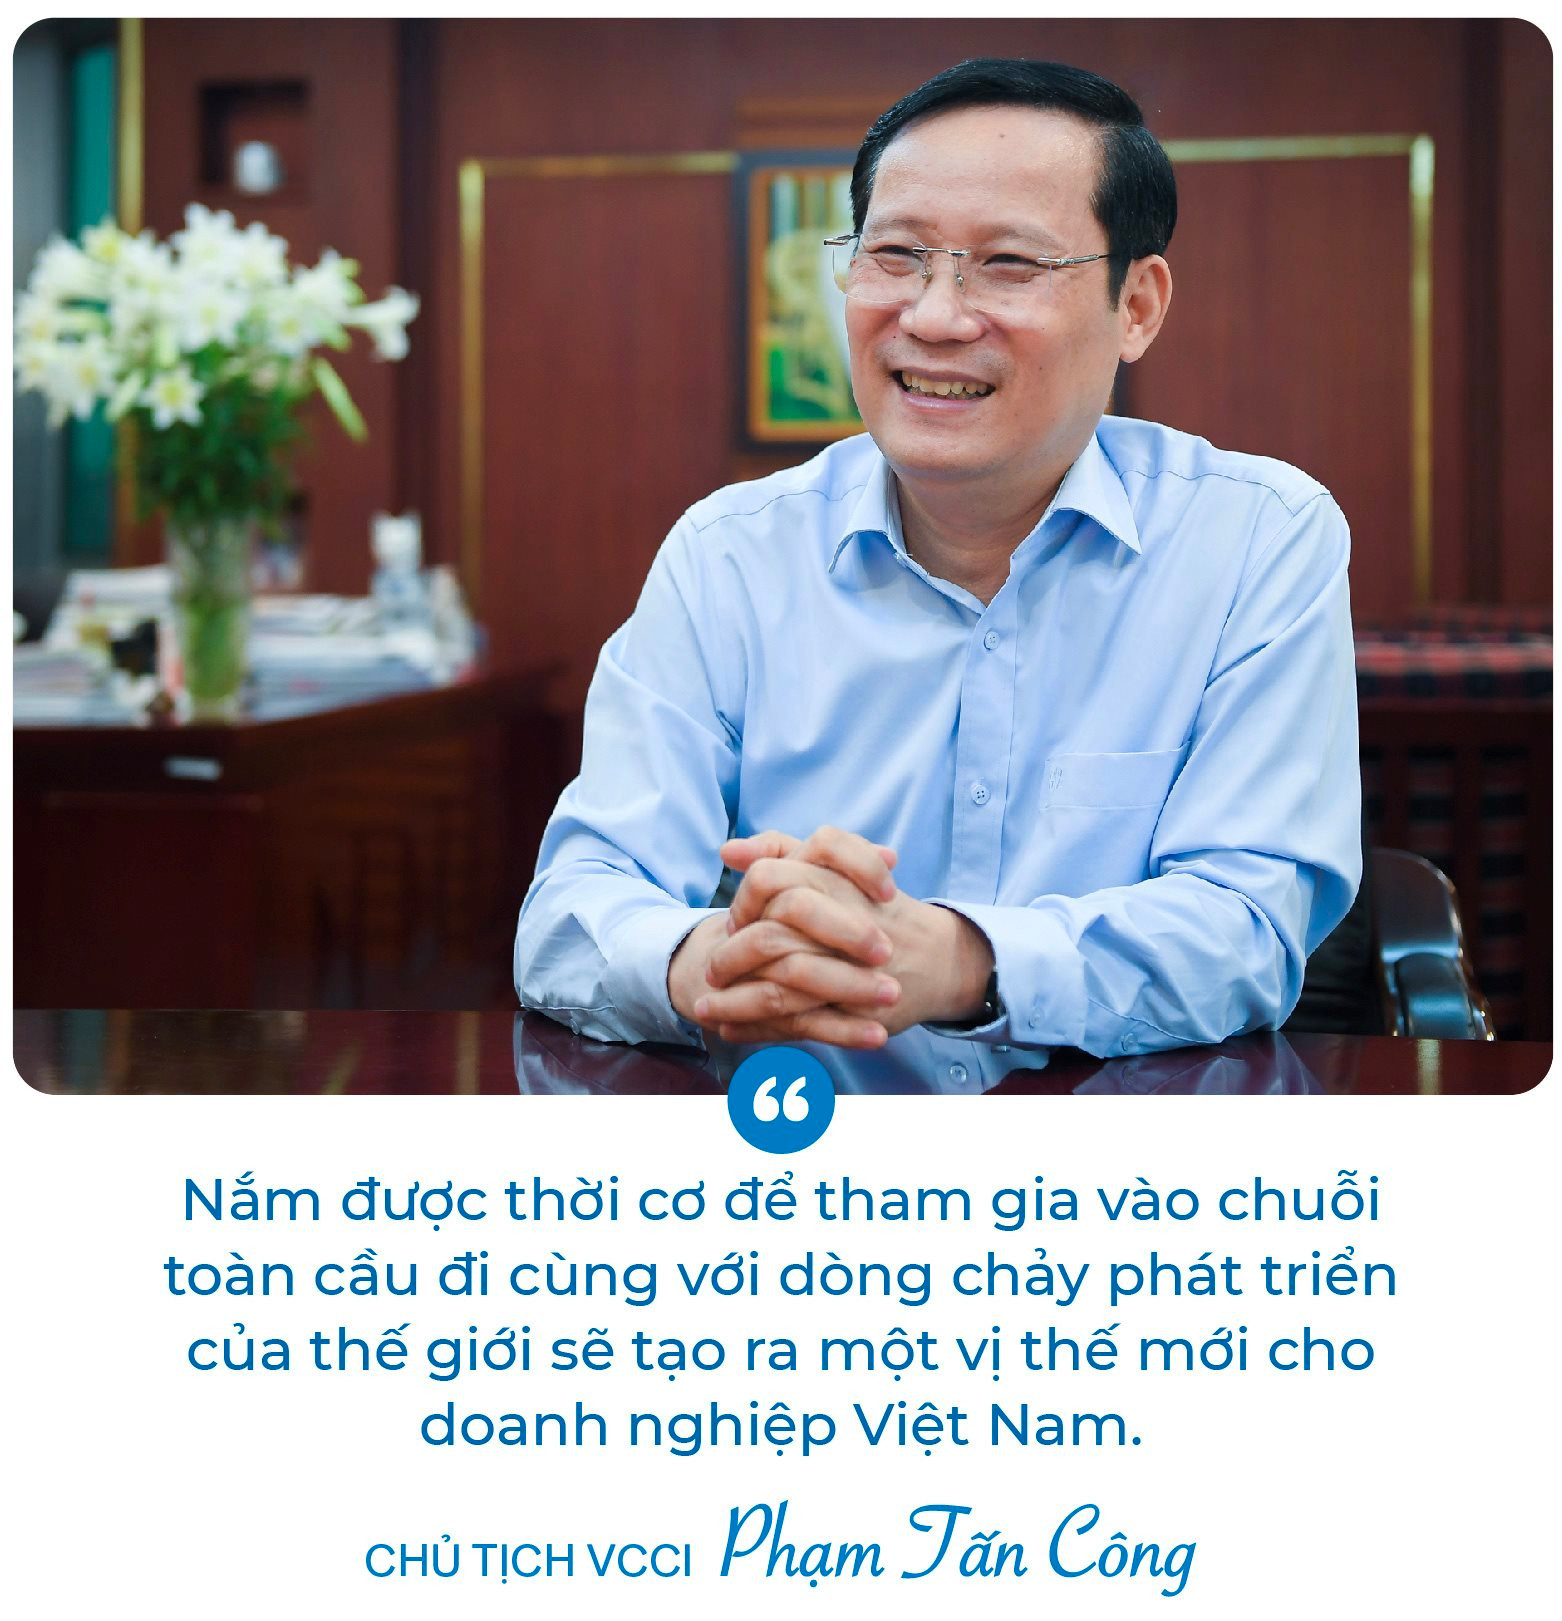 Chủ tịch VCCI Phạm Tấn Công: Không có đạo đức doanh nhân và văn hóa kinh doanh, doanh nghiệp sẽ sụp đổ thôi! - Ảnh 7.